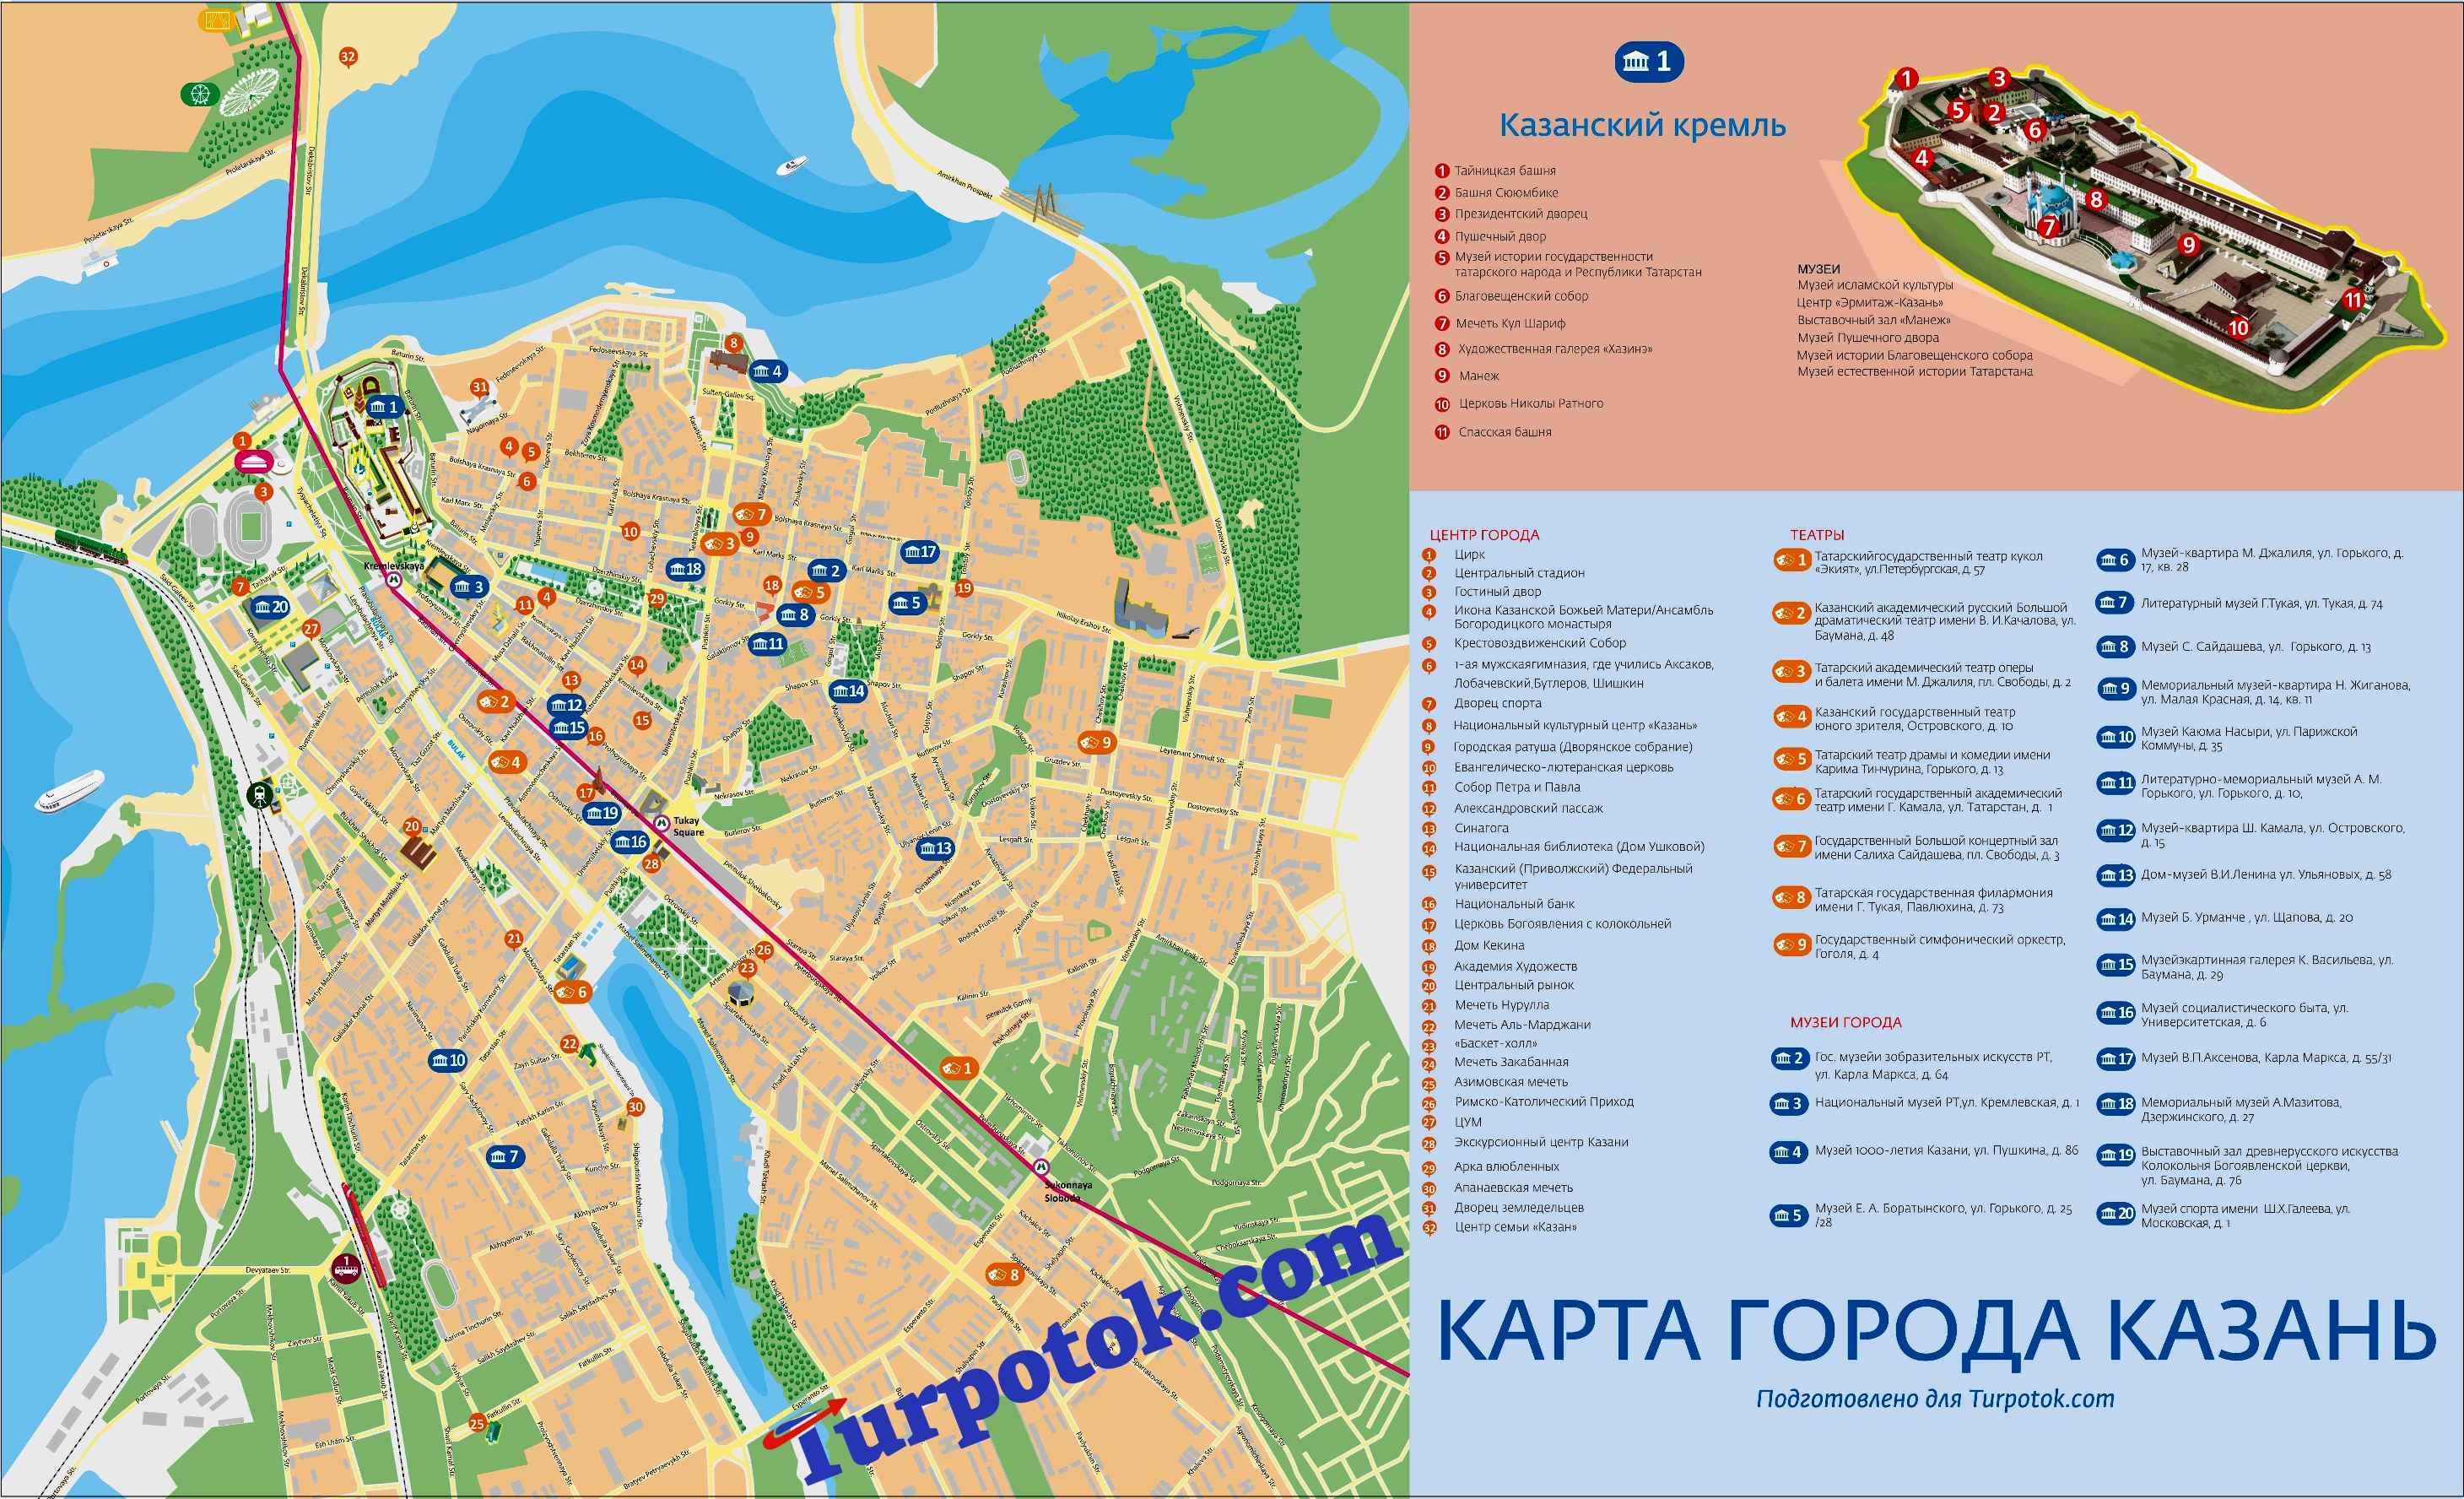 Схема города Казань с изображением Кремля, музеев, храмов и т.п.